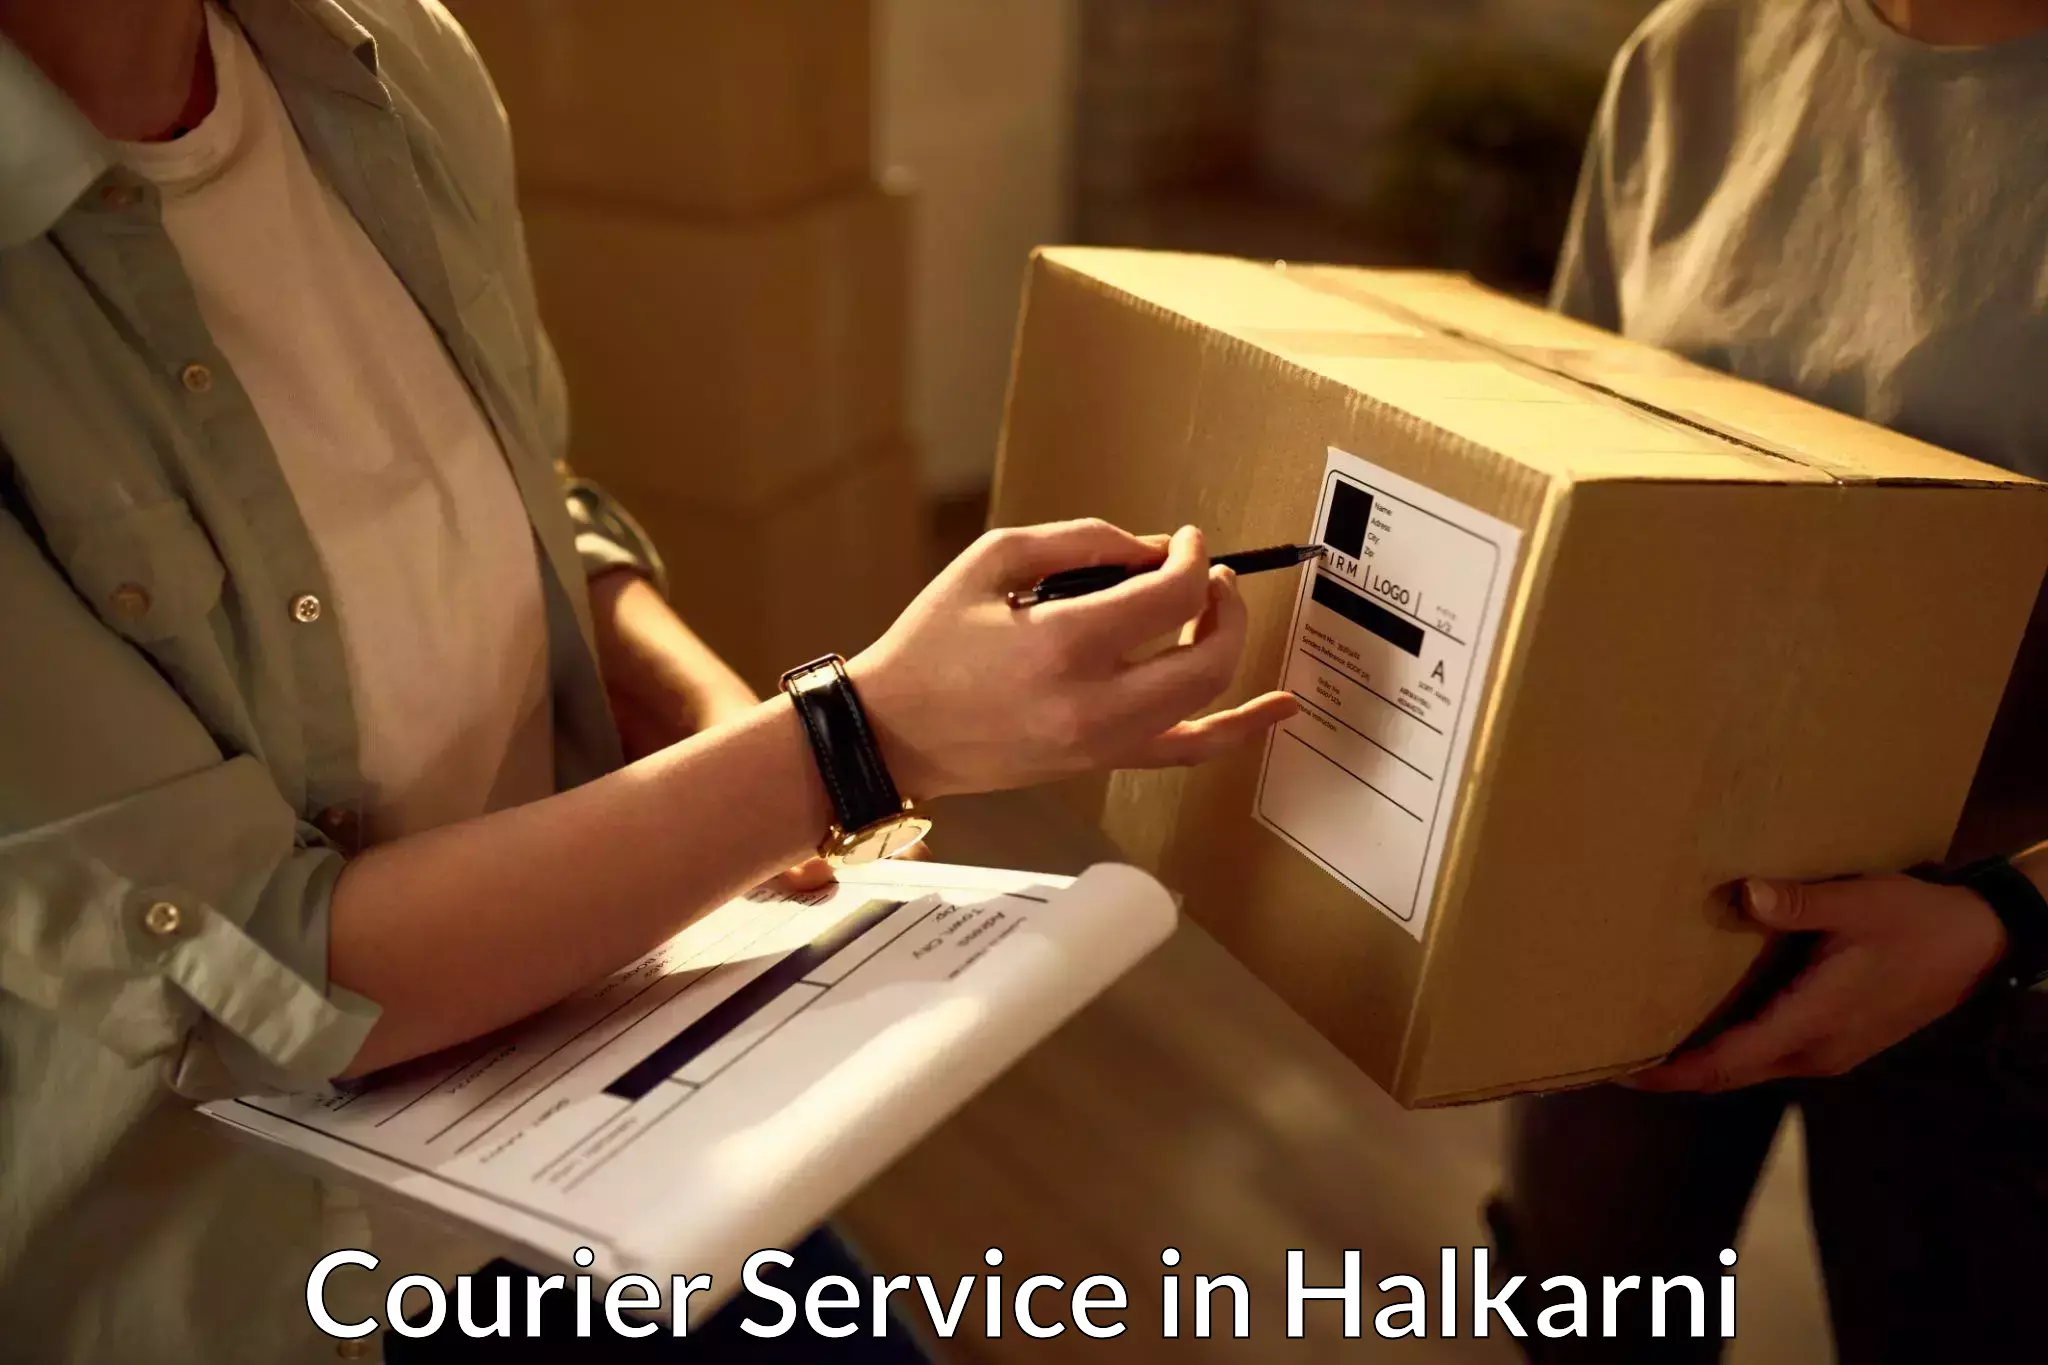 Advanced delivery network in Halkarni